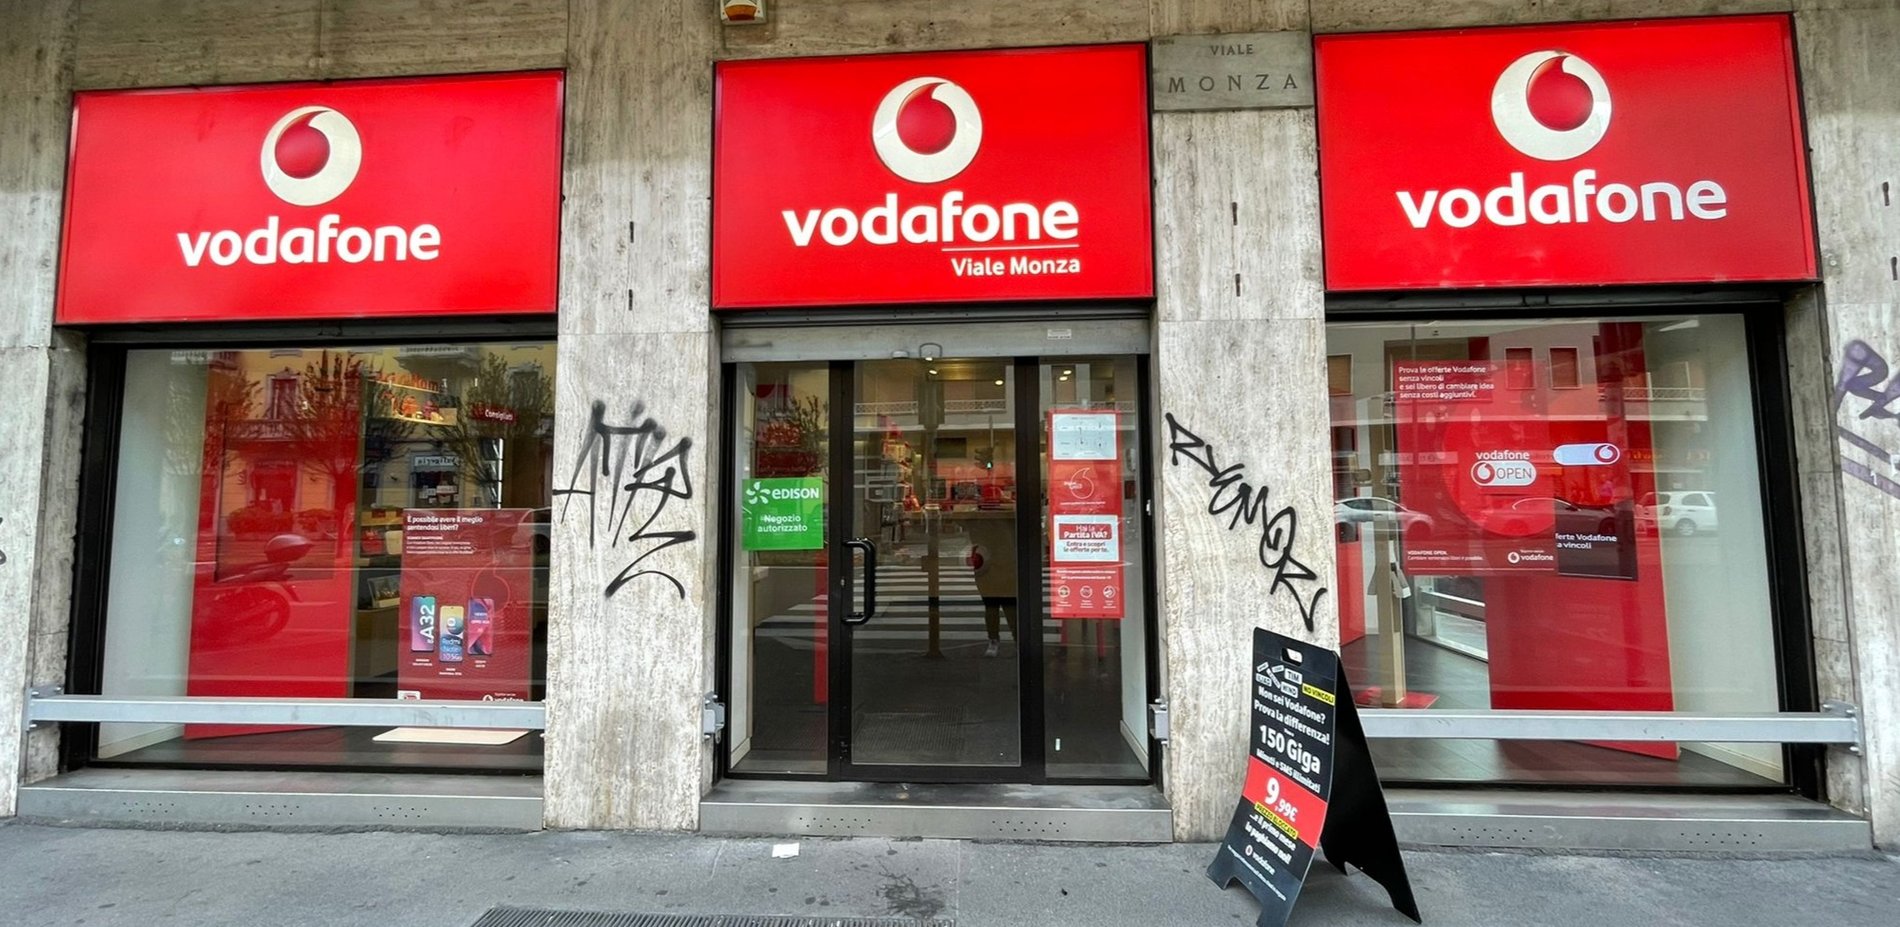 Vodafone Store | Privata Chioggia